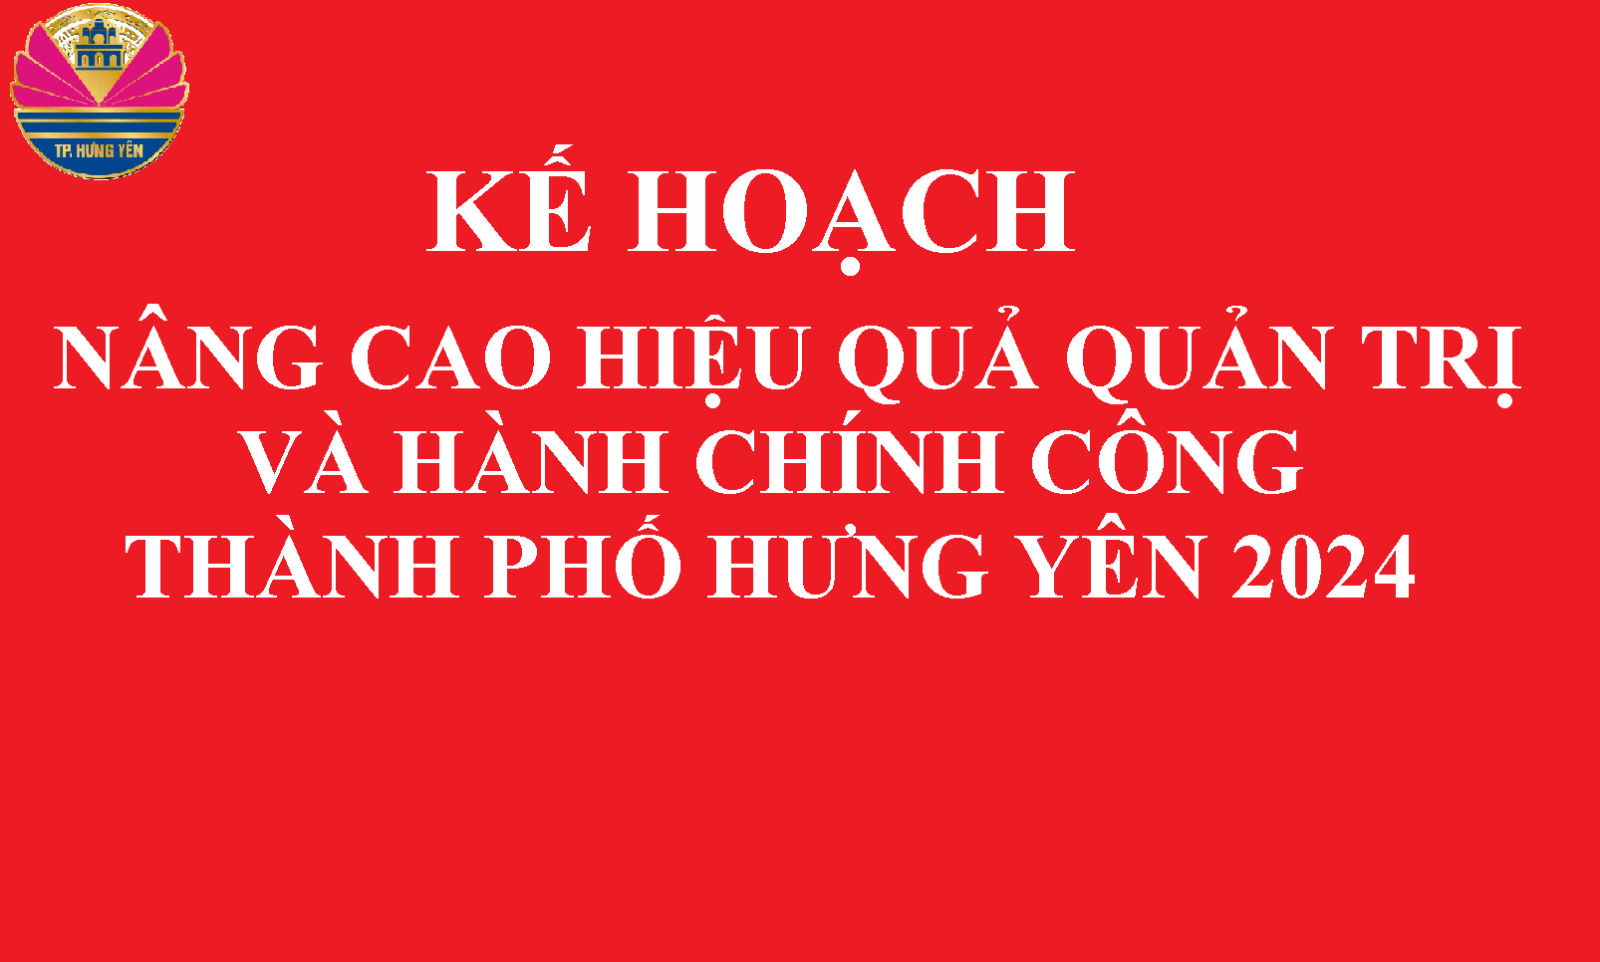 Kế hoạch Nâng cao hiệu quả quản trị và hành chính công (PAPI) thành phố Hưng Yên năm 2024